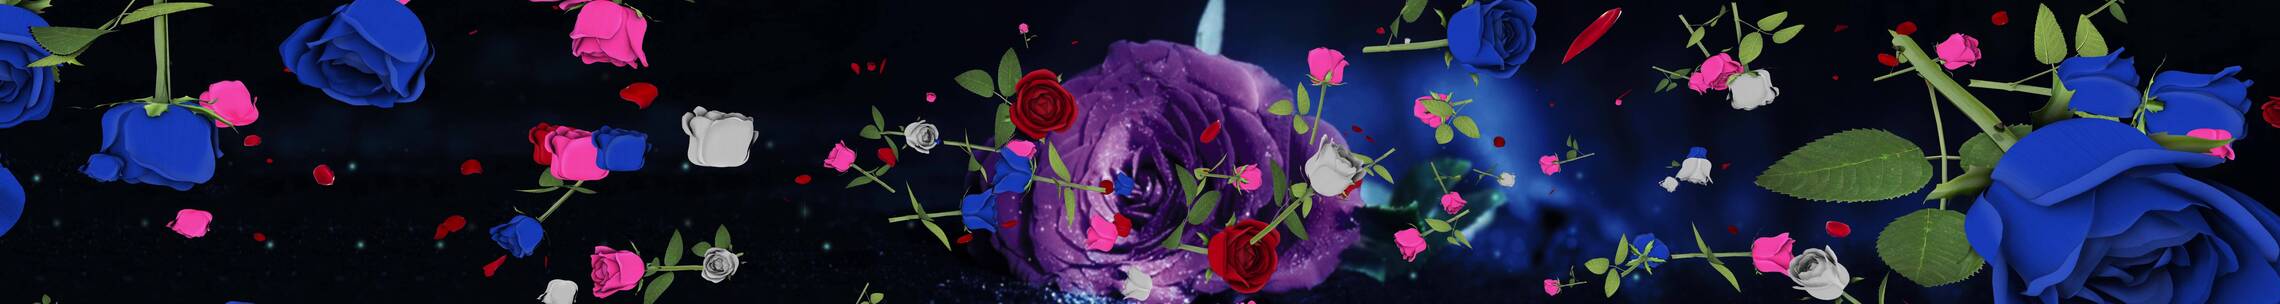 蓝色玫瑰 粒子花瓣 玫瑰花海 婚礼宴会素材